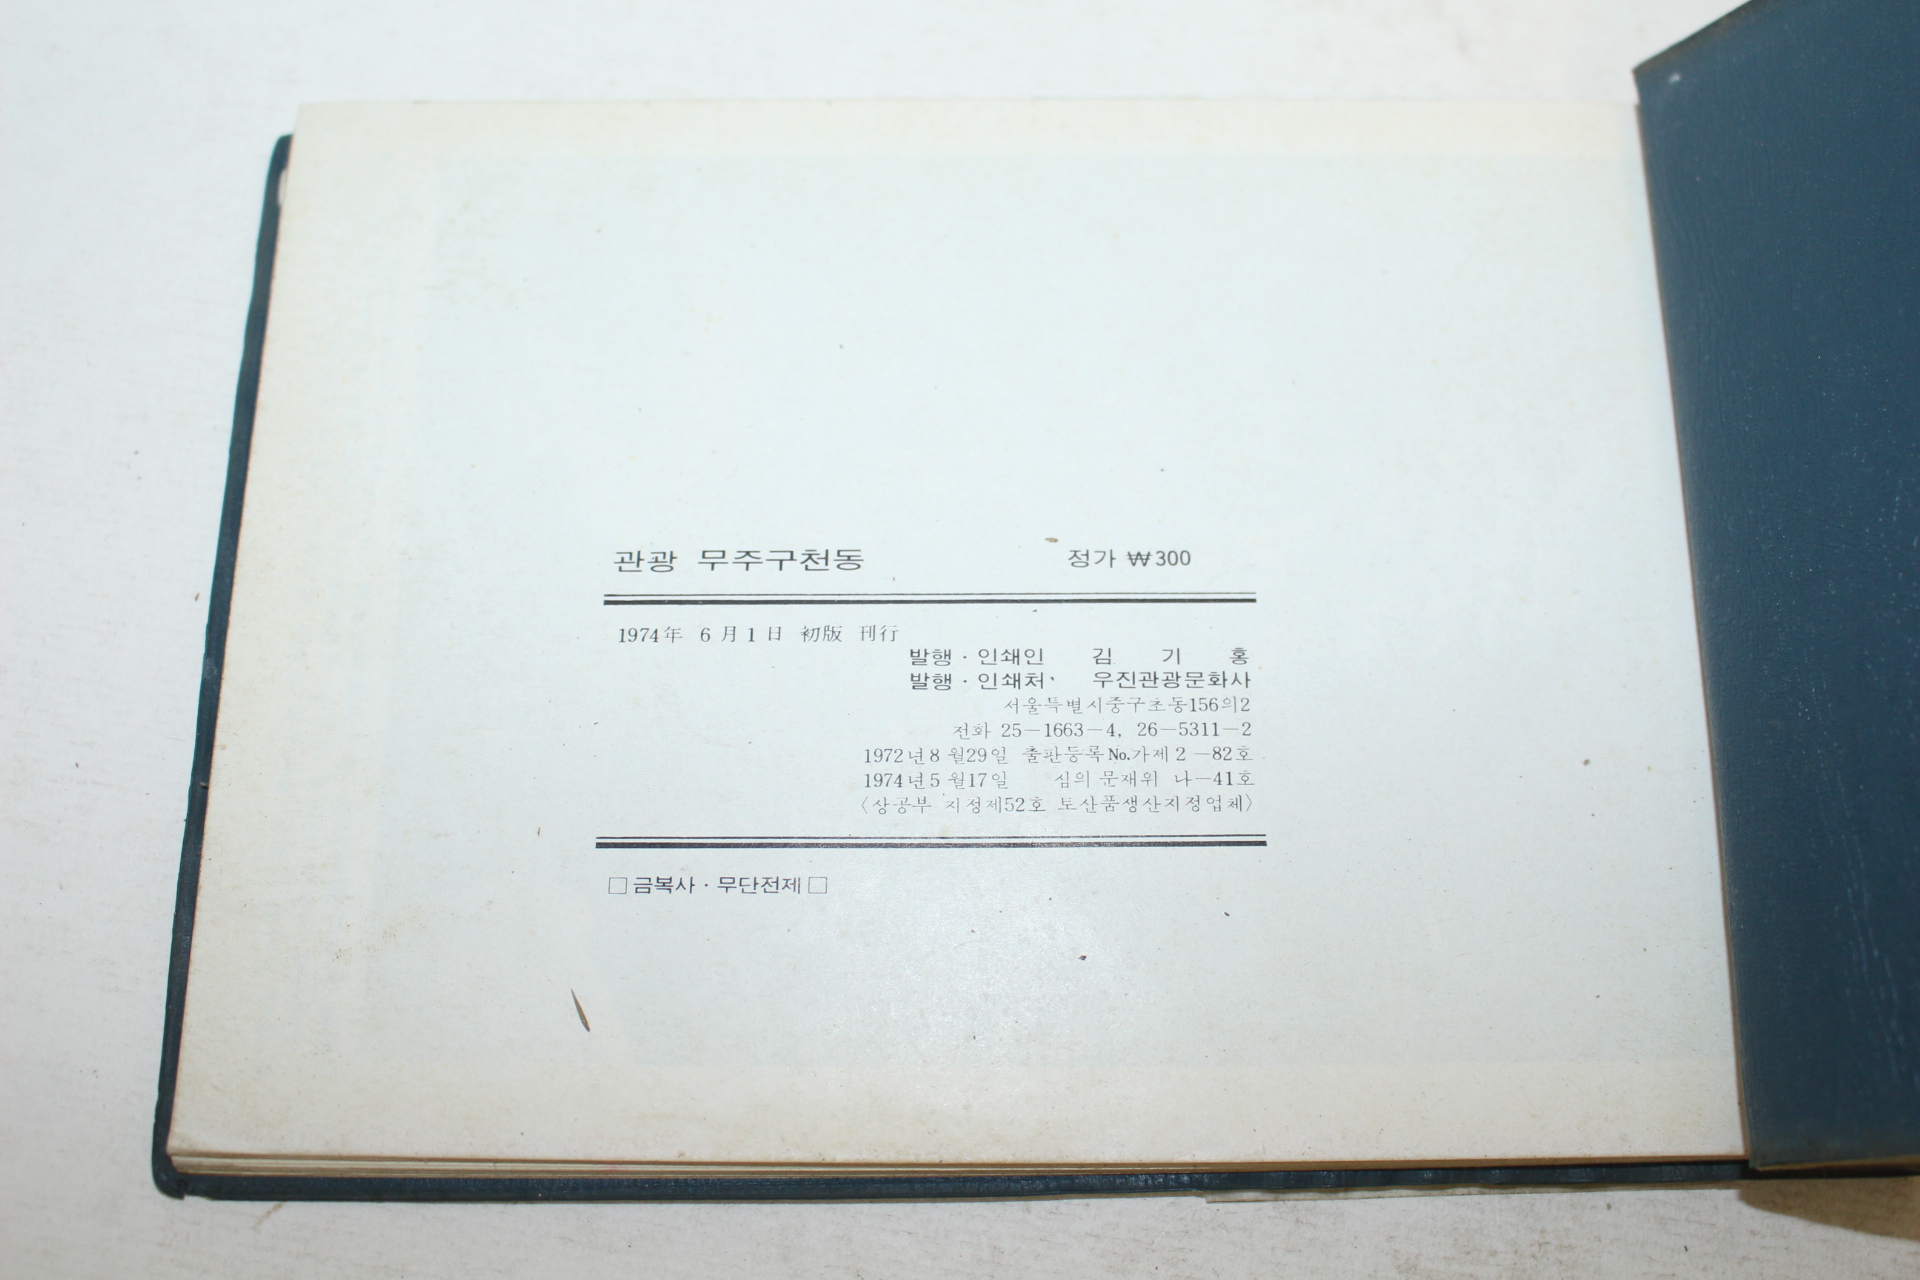 1974년 무주구천동(茂朱九千洞) 관광기념